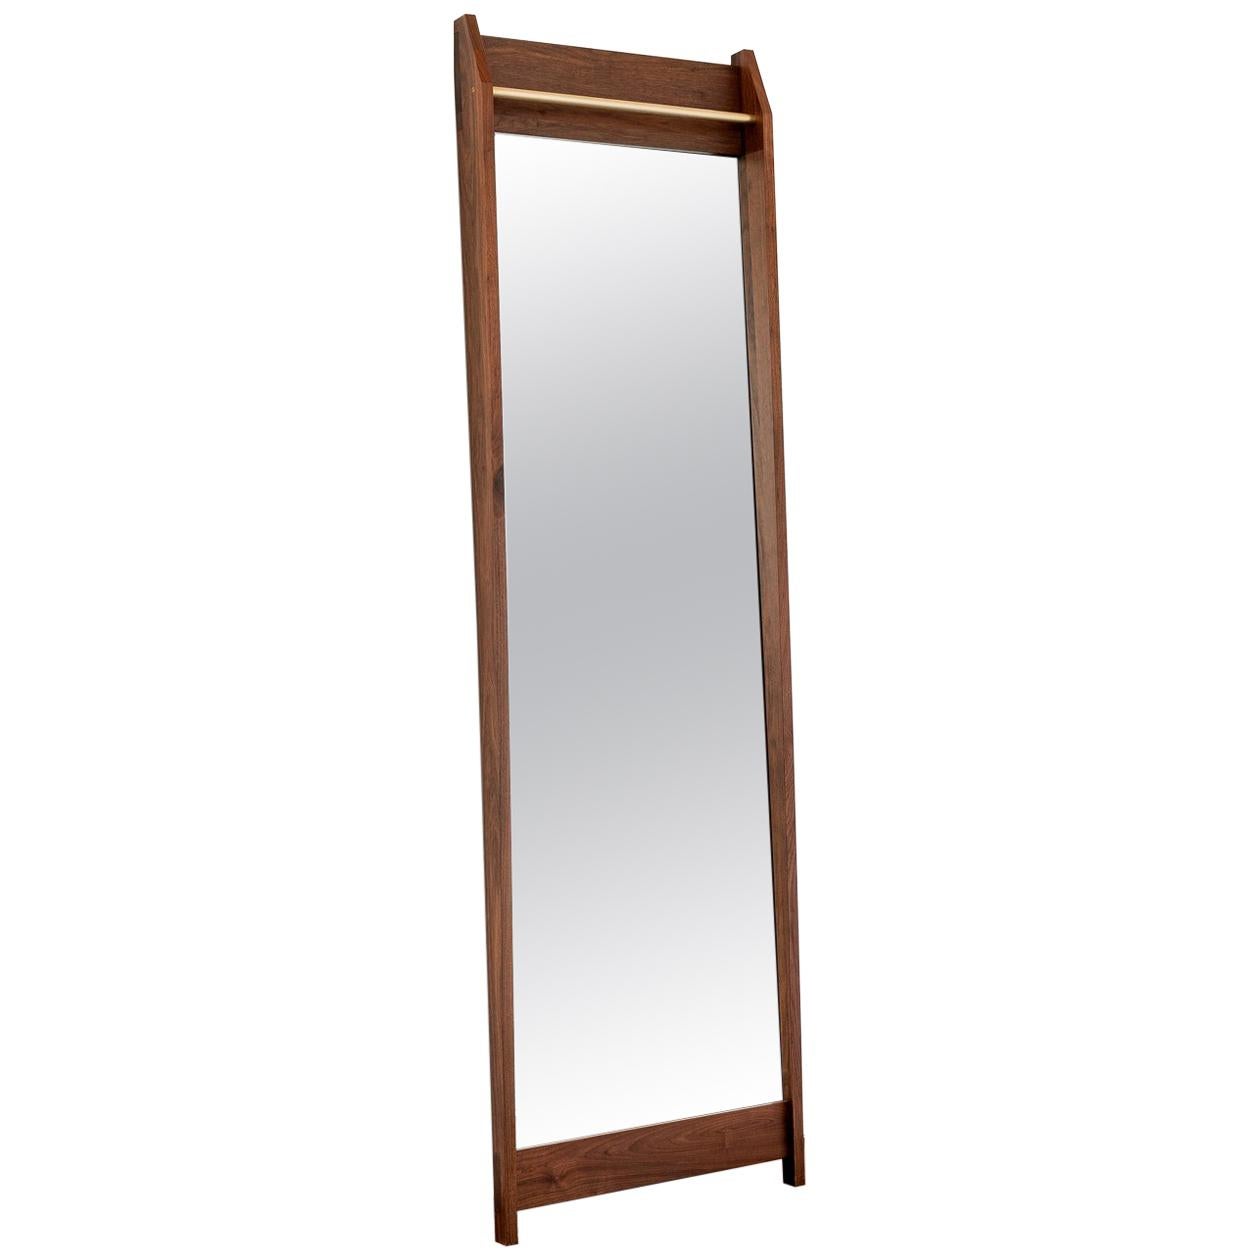 Am1, miroir en noyer massif de longueur totale avec barre supérieure en bronze